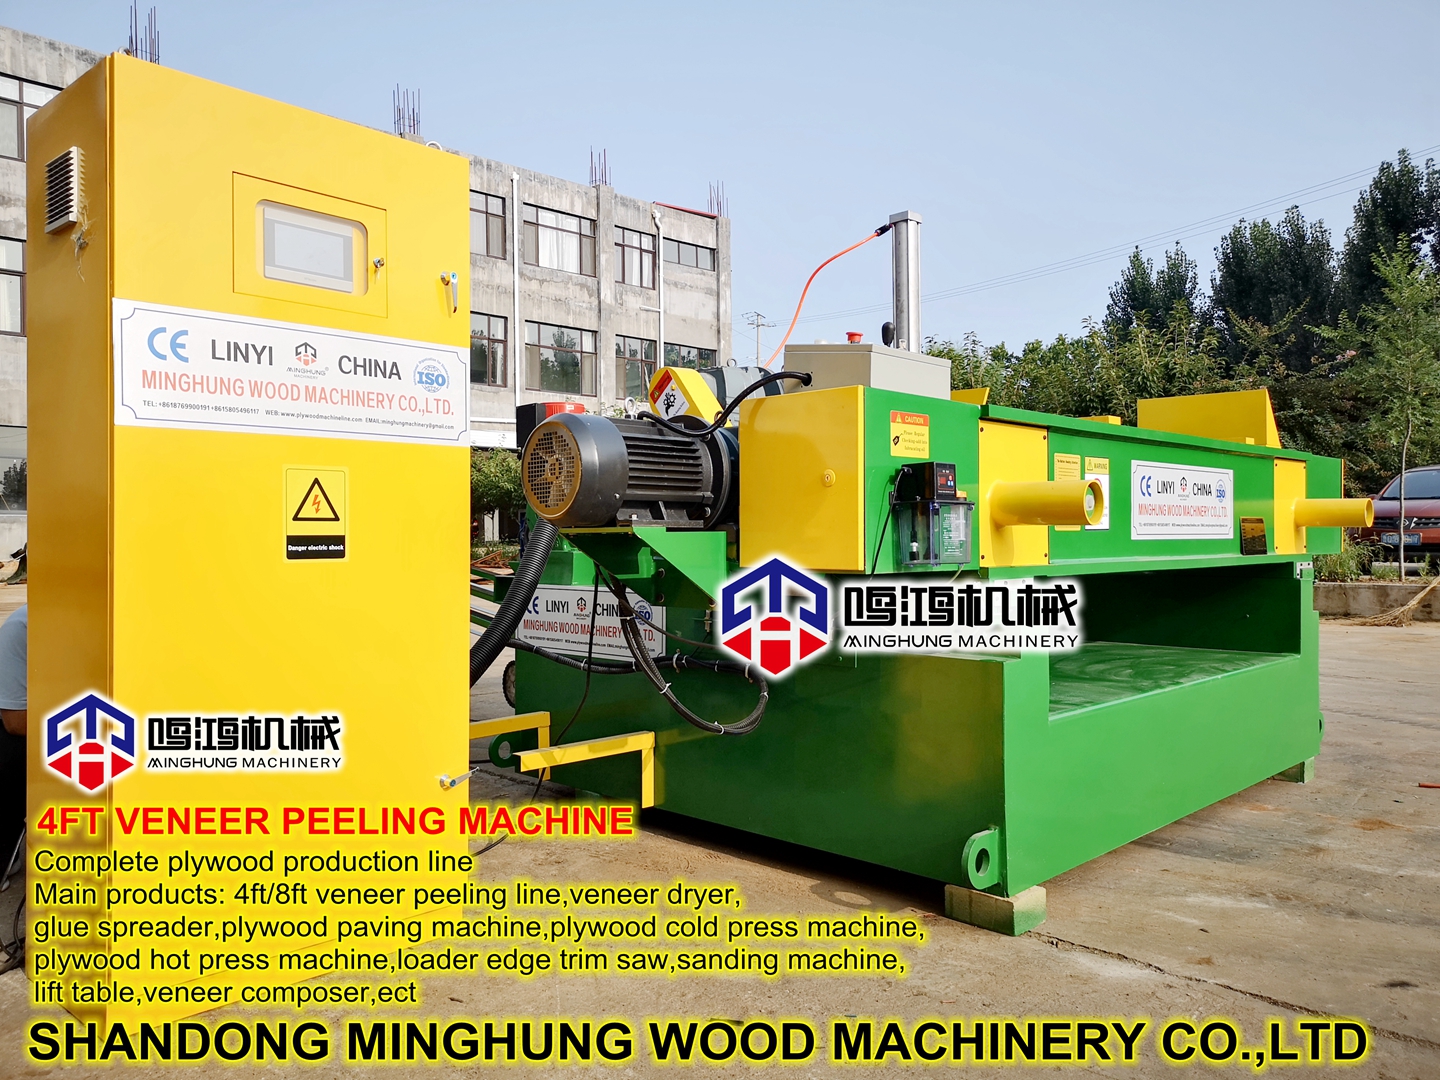 China Linyi Strong Furnierschäldrehmaschine auf Sägewerk